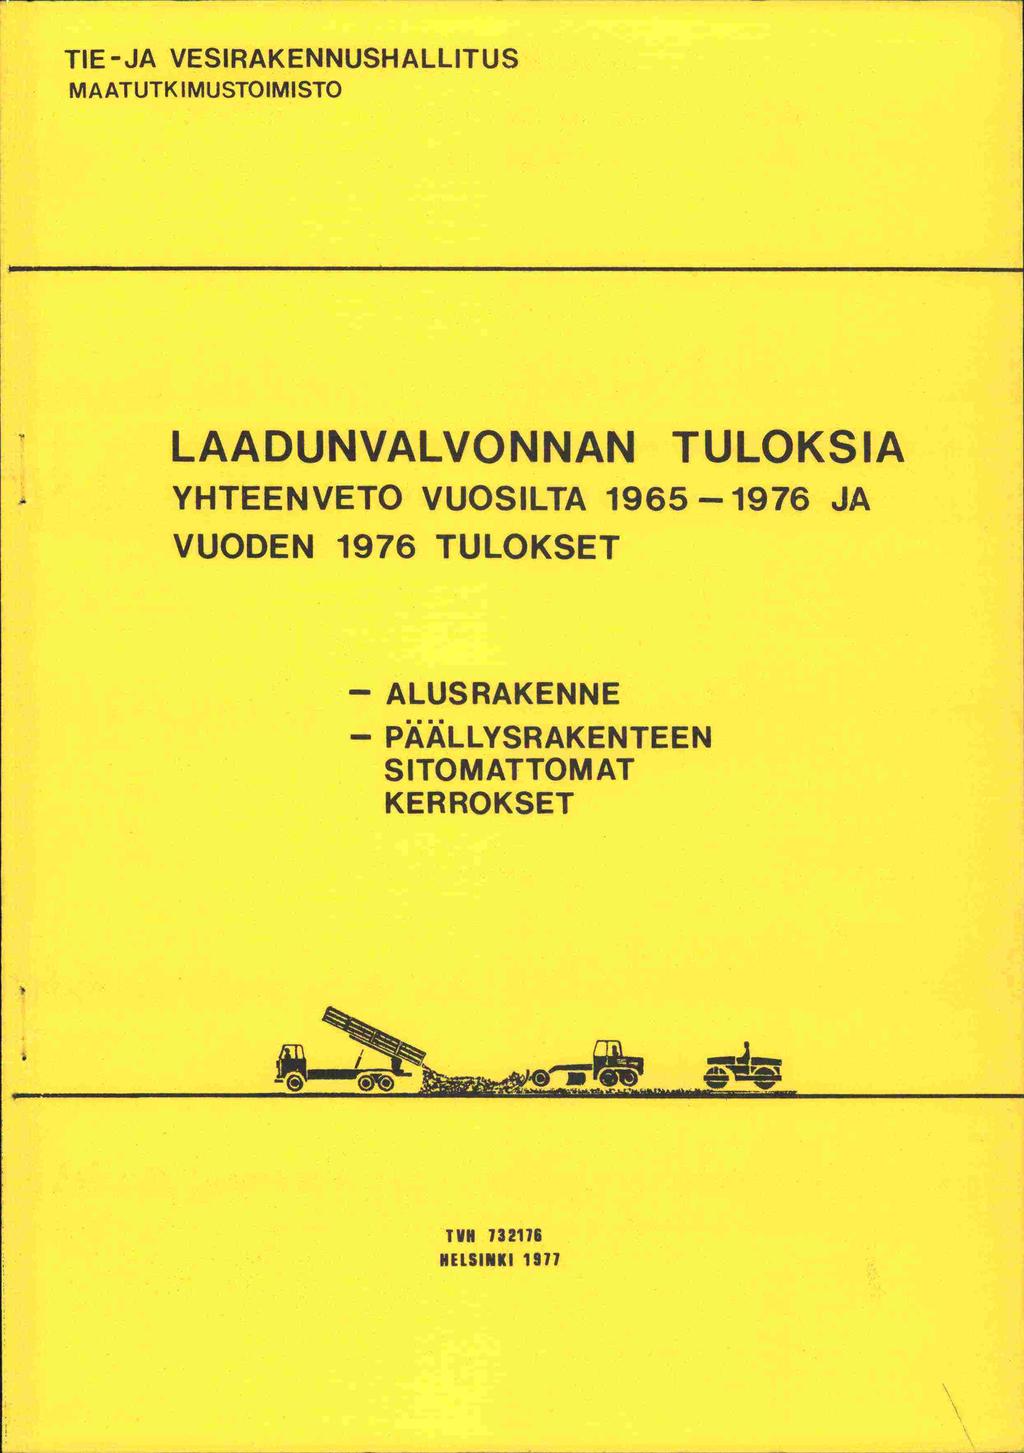 TIE-JA VESIRAKENNUSHALLITUS MAATUTK IMUSTOIMISTO LAADUNVALVONNAN TULOKSIA YHTEEN VETO VUOSILTA 1965-1976